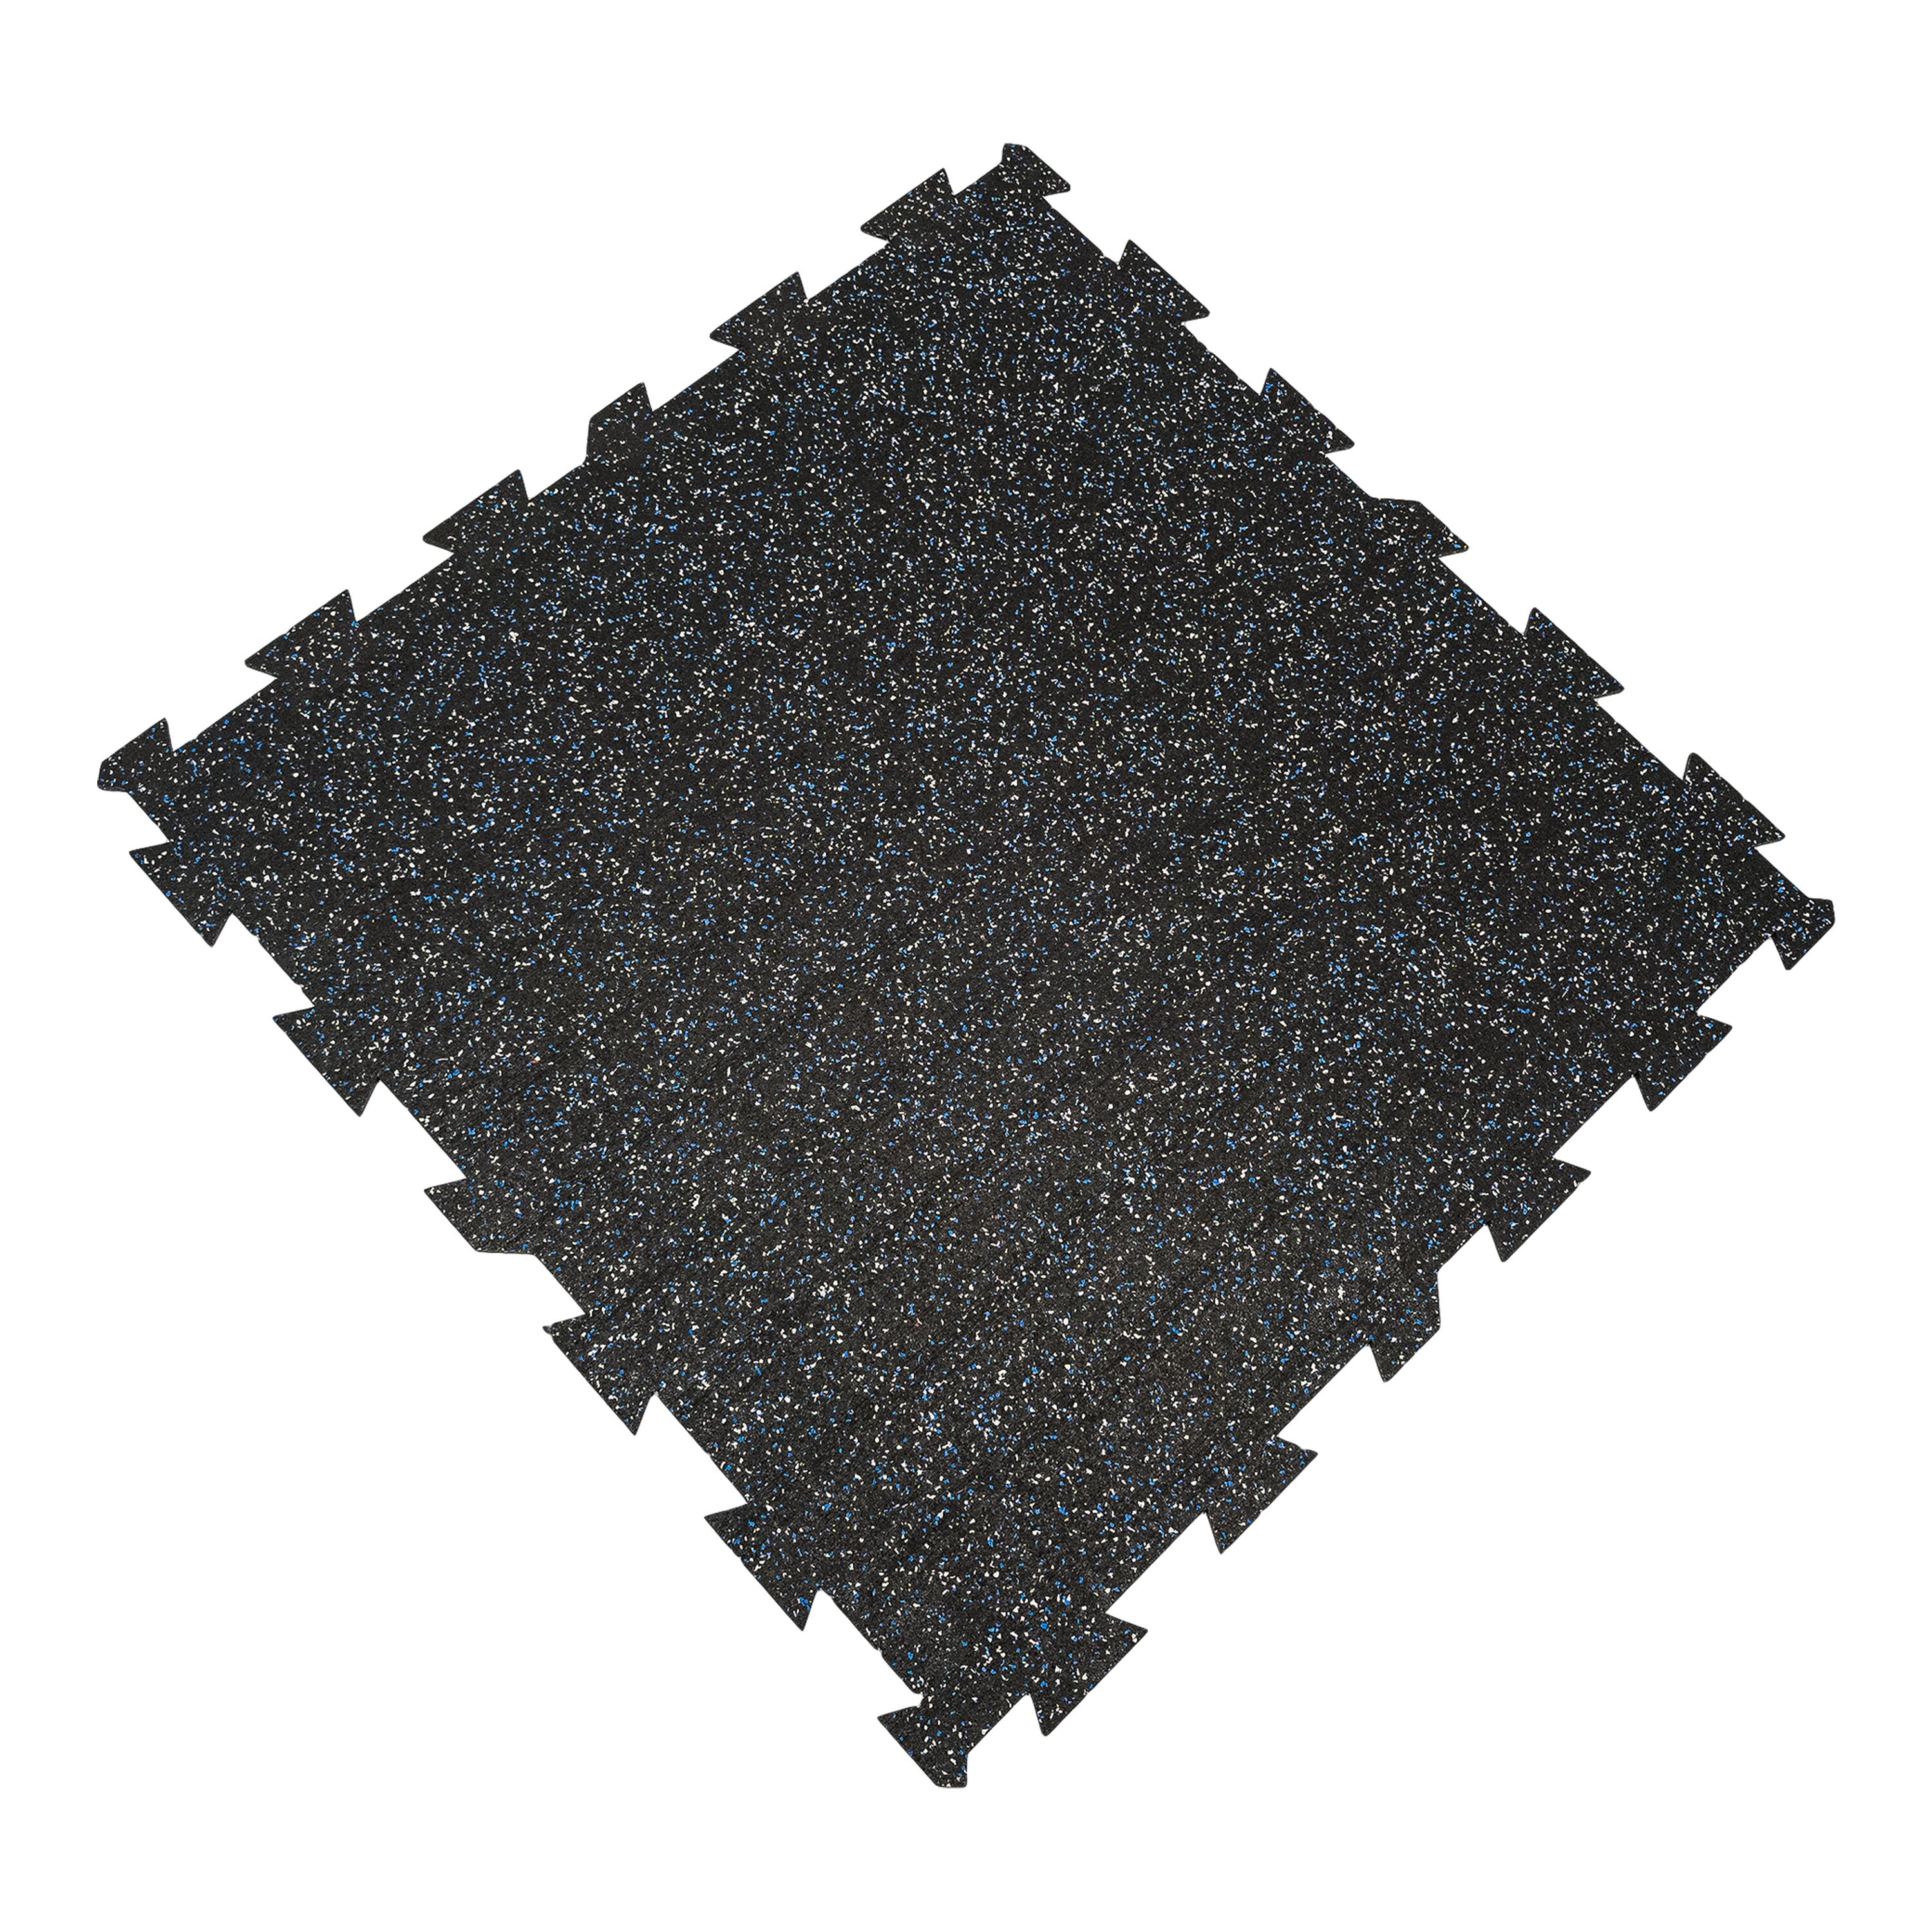 Čierno-bielo-modrá gumová modulová puzzle dlažba (stred) FLOMA FitFlo SF1050 - dĺžka 100 cm, šírka 100 cm a výška 0,8 cm